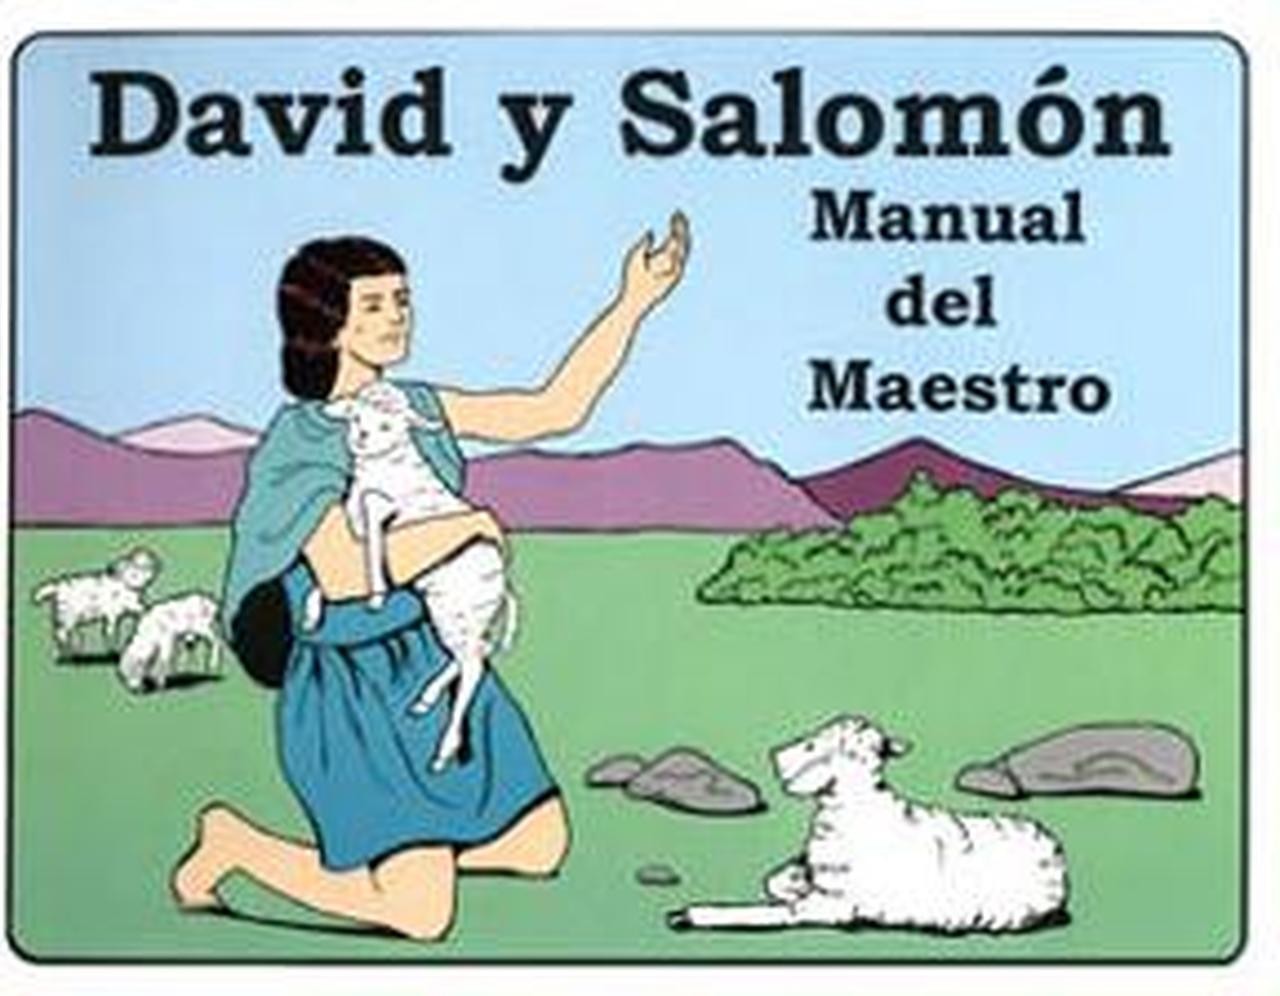 David y Salomon